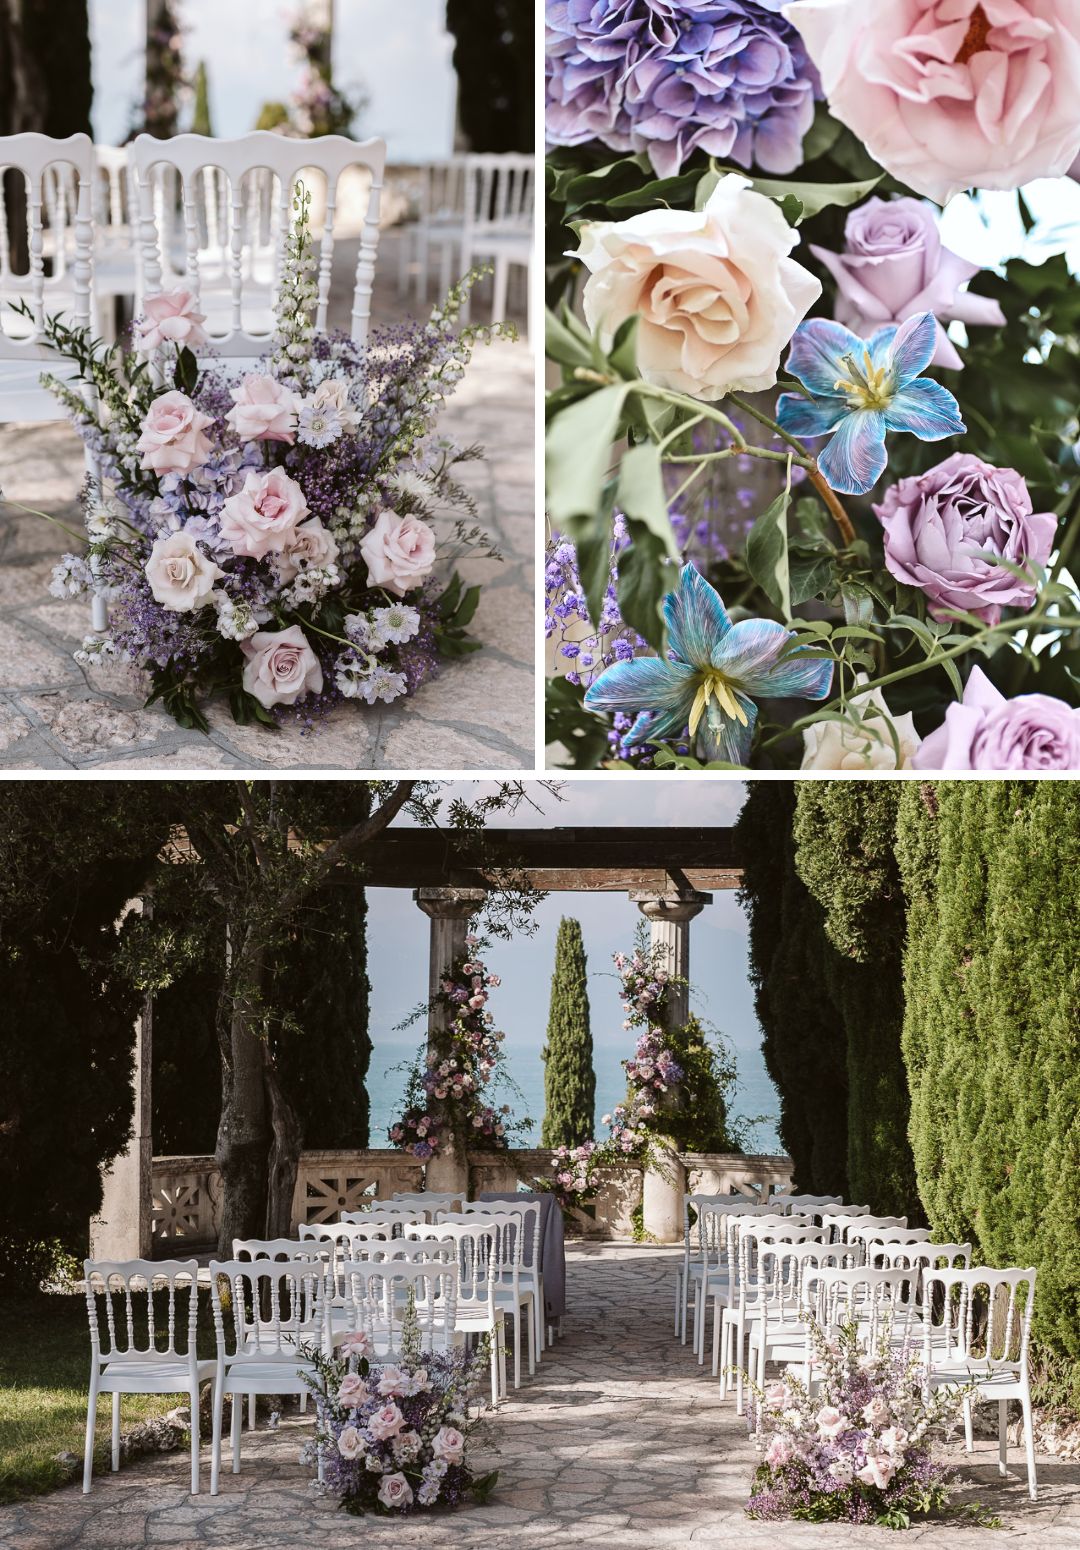 purple, pink and blue floral arrangements by Amie Ziedi